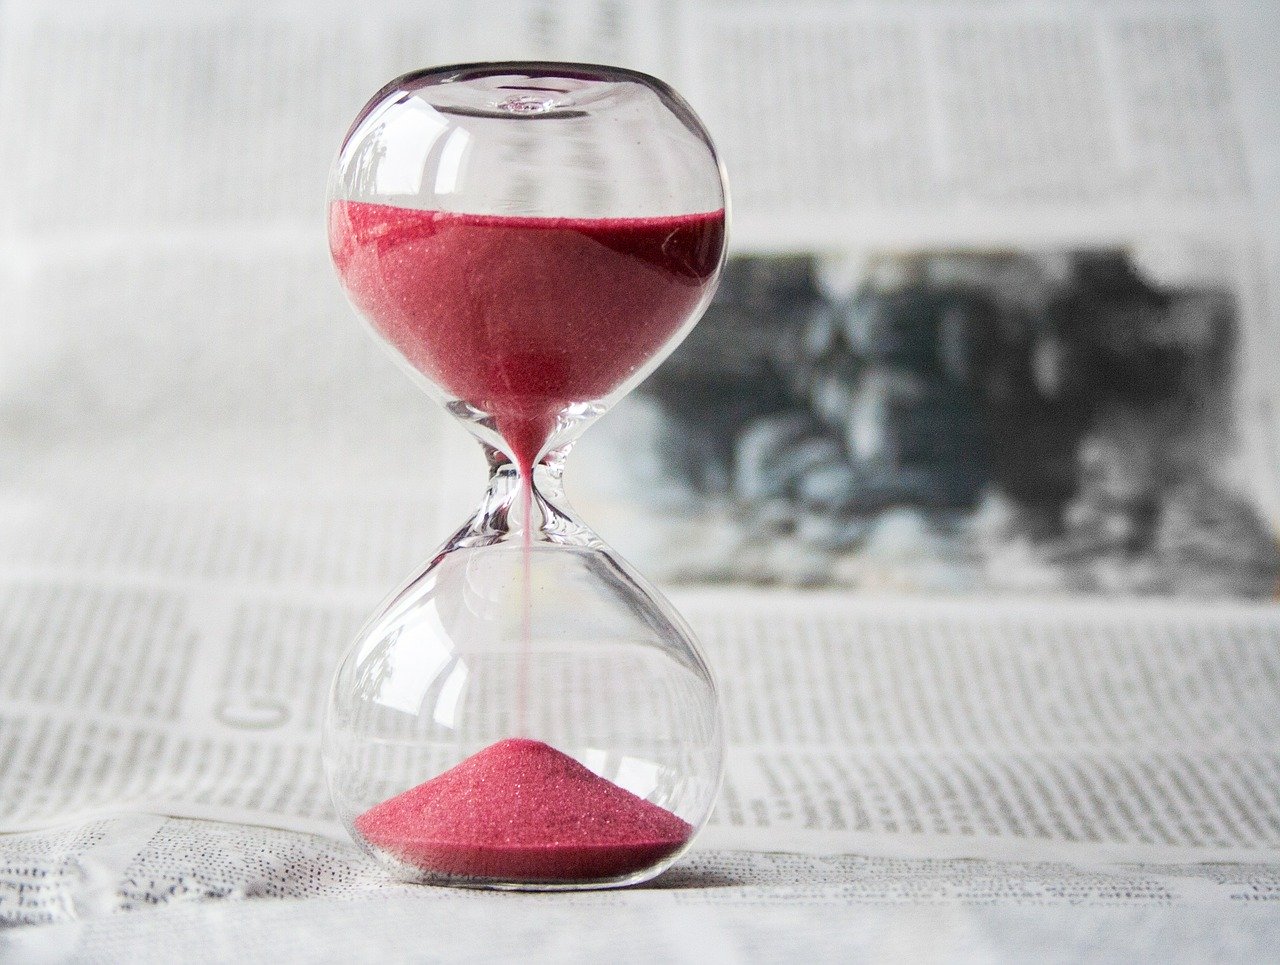 Les 9 meilleures techniques anti-procrastination selon la psychologue